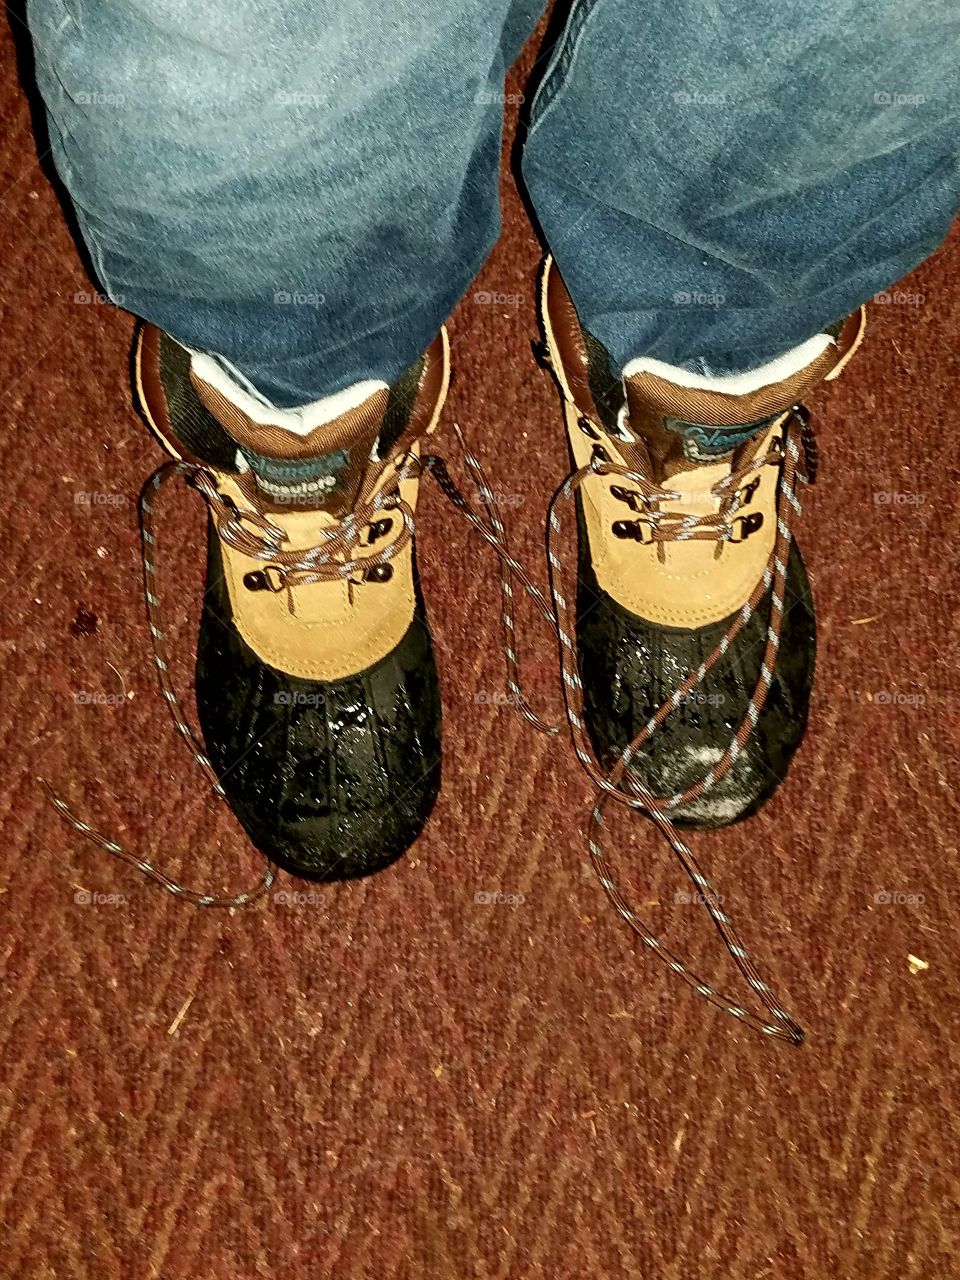 Coleman waterproof boots, untied indoors.